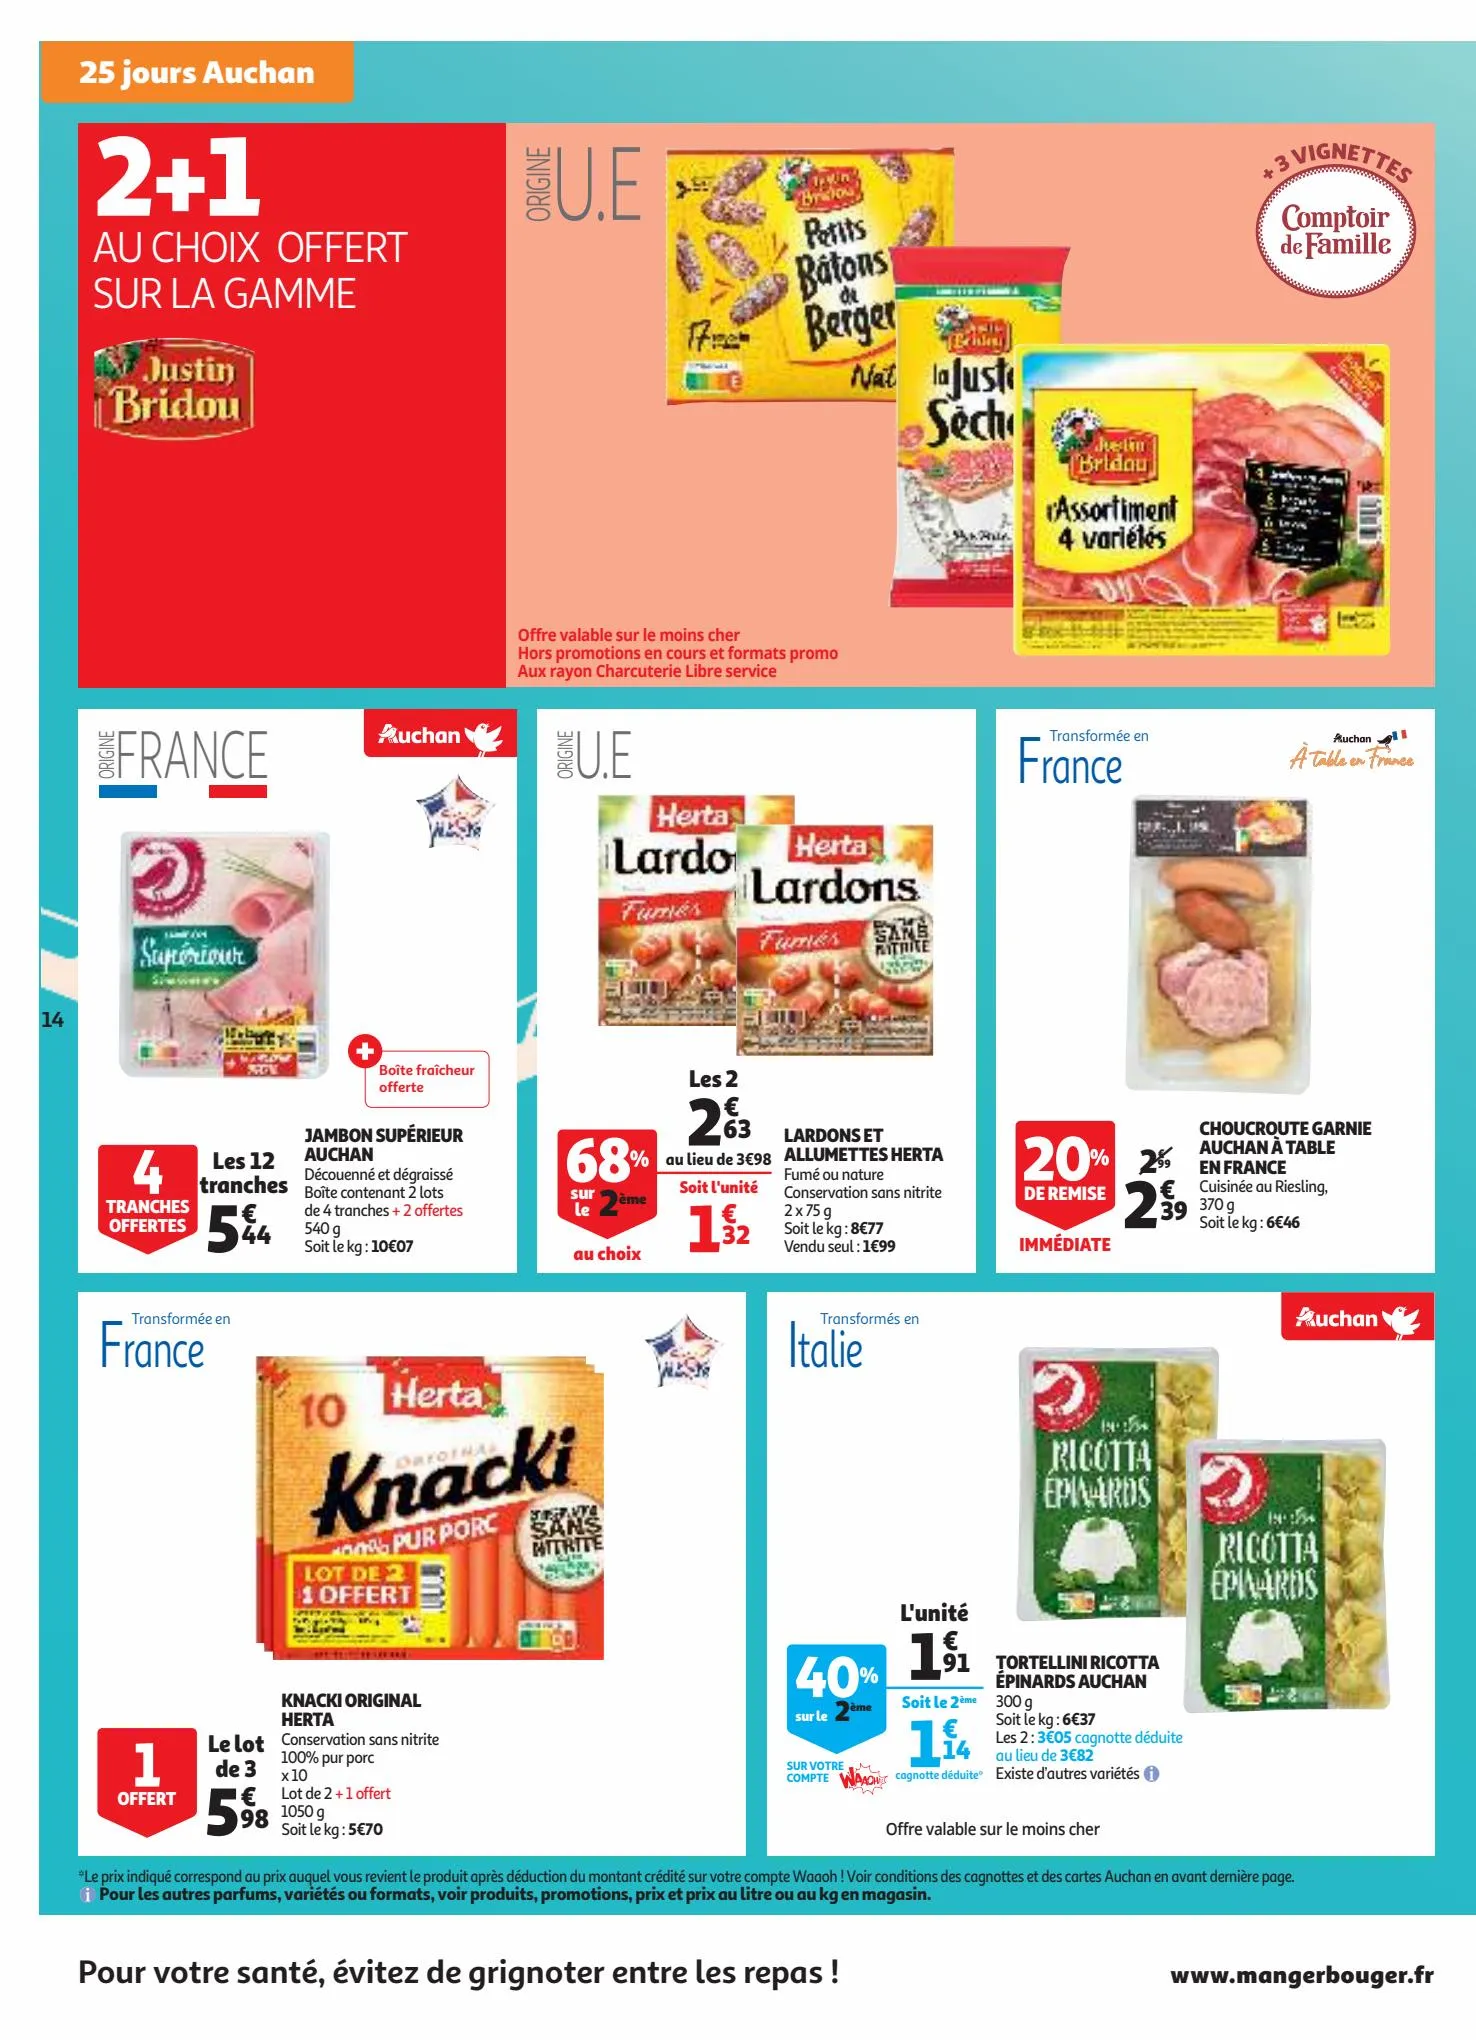 Catalogue 25 jours Auchan, page 00014